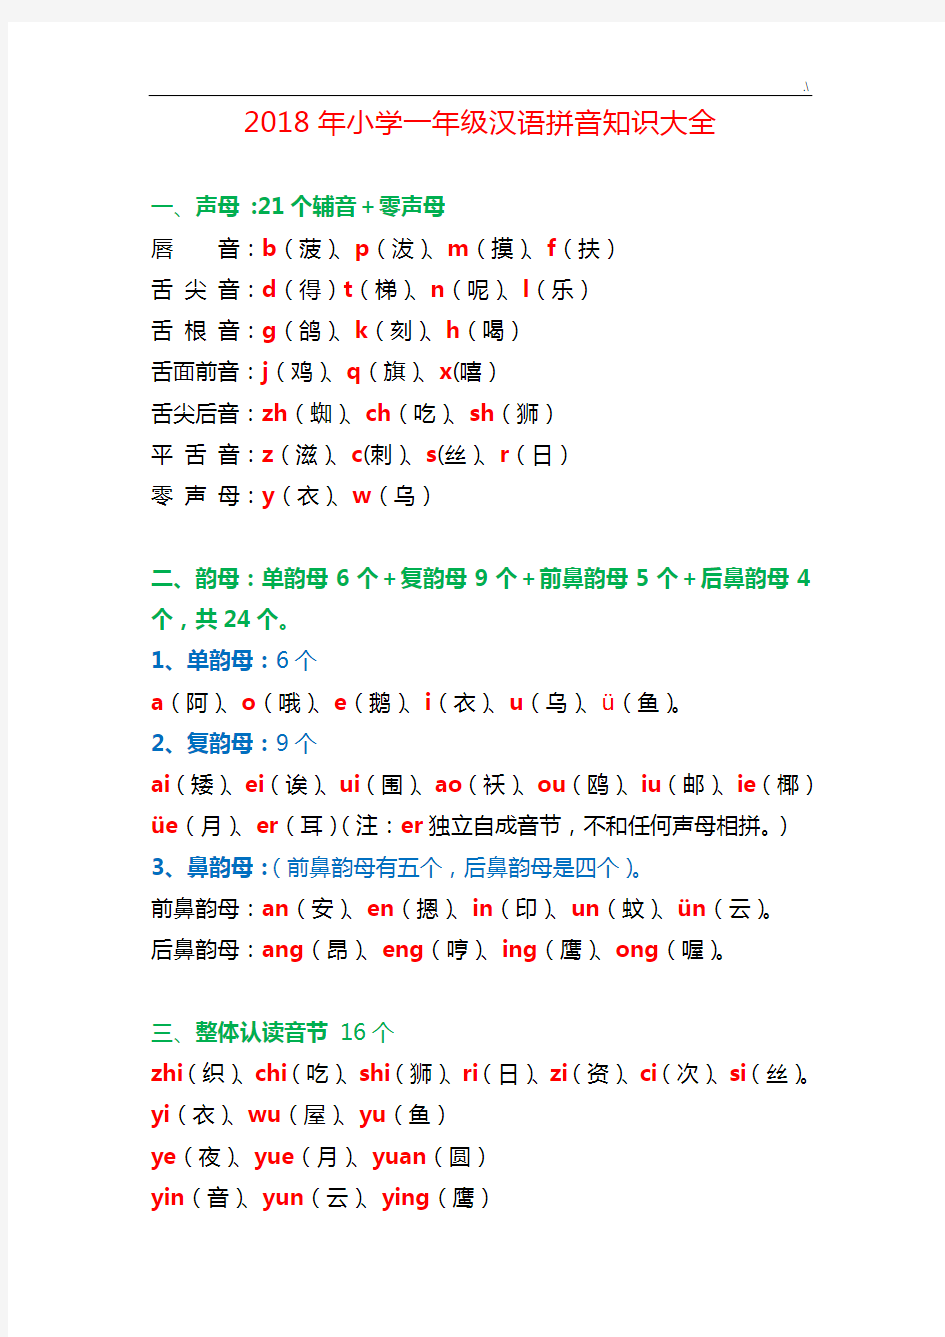 2018年度小学一年级汉语拼音学习知识全套汇编